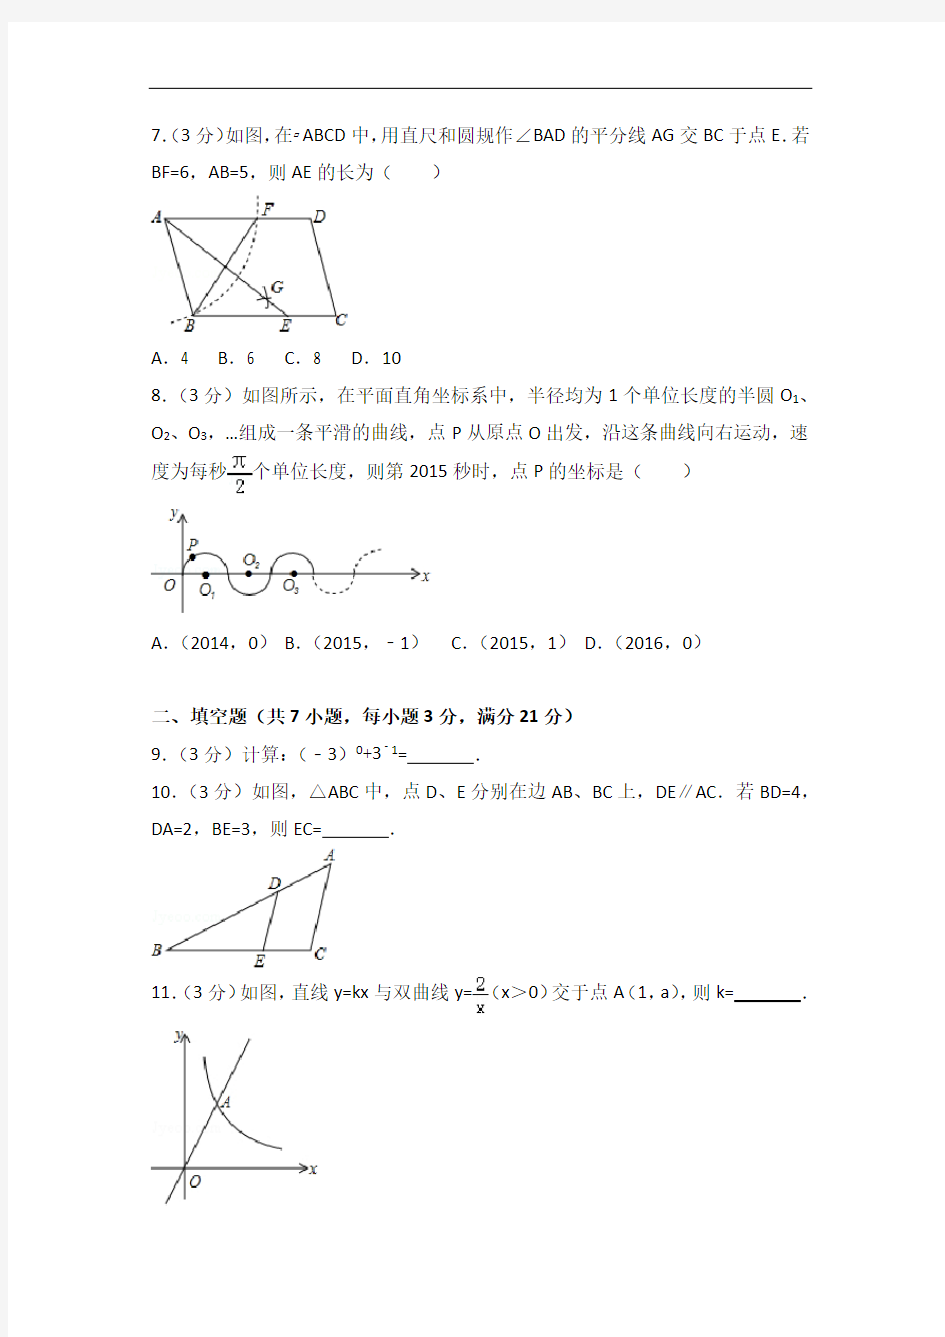 2015年河南省中考数学试卷